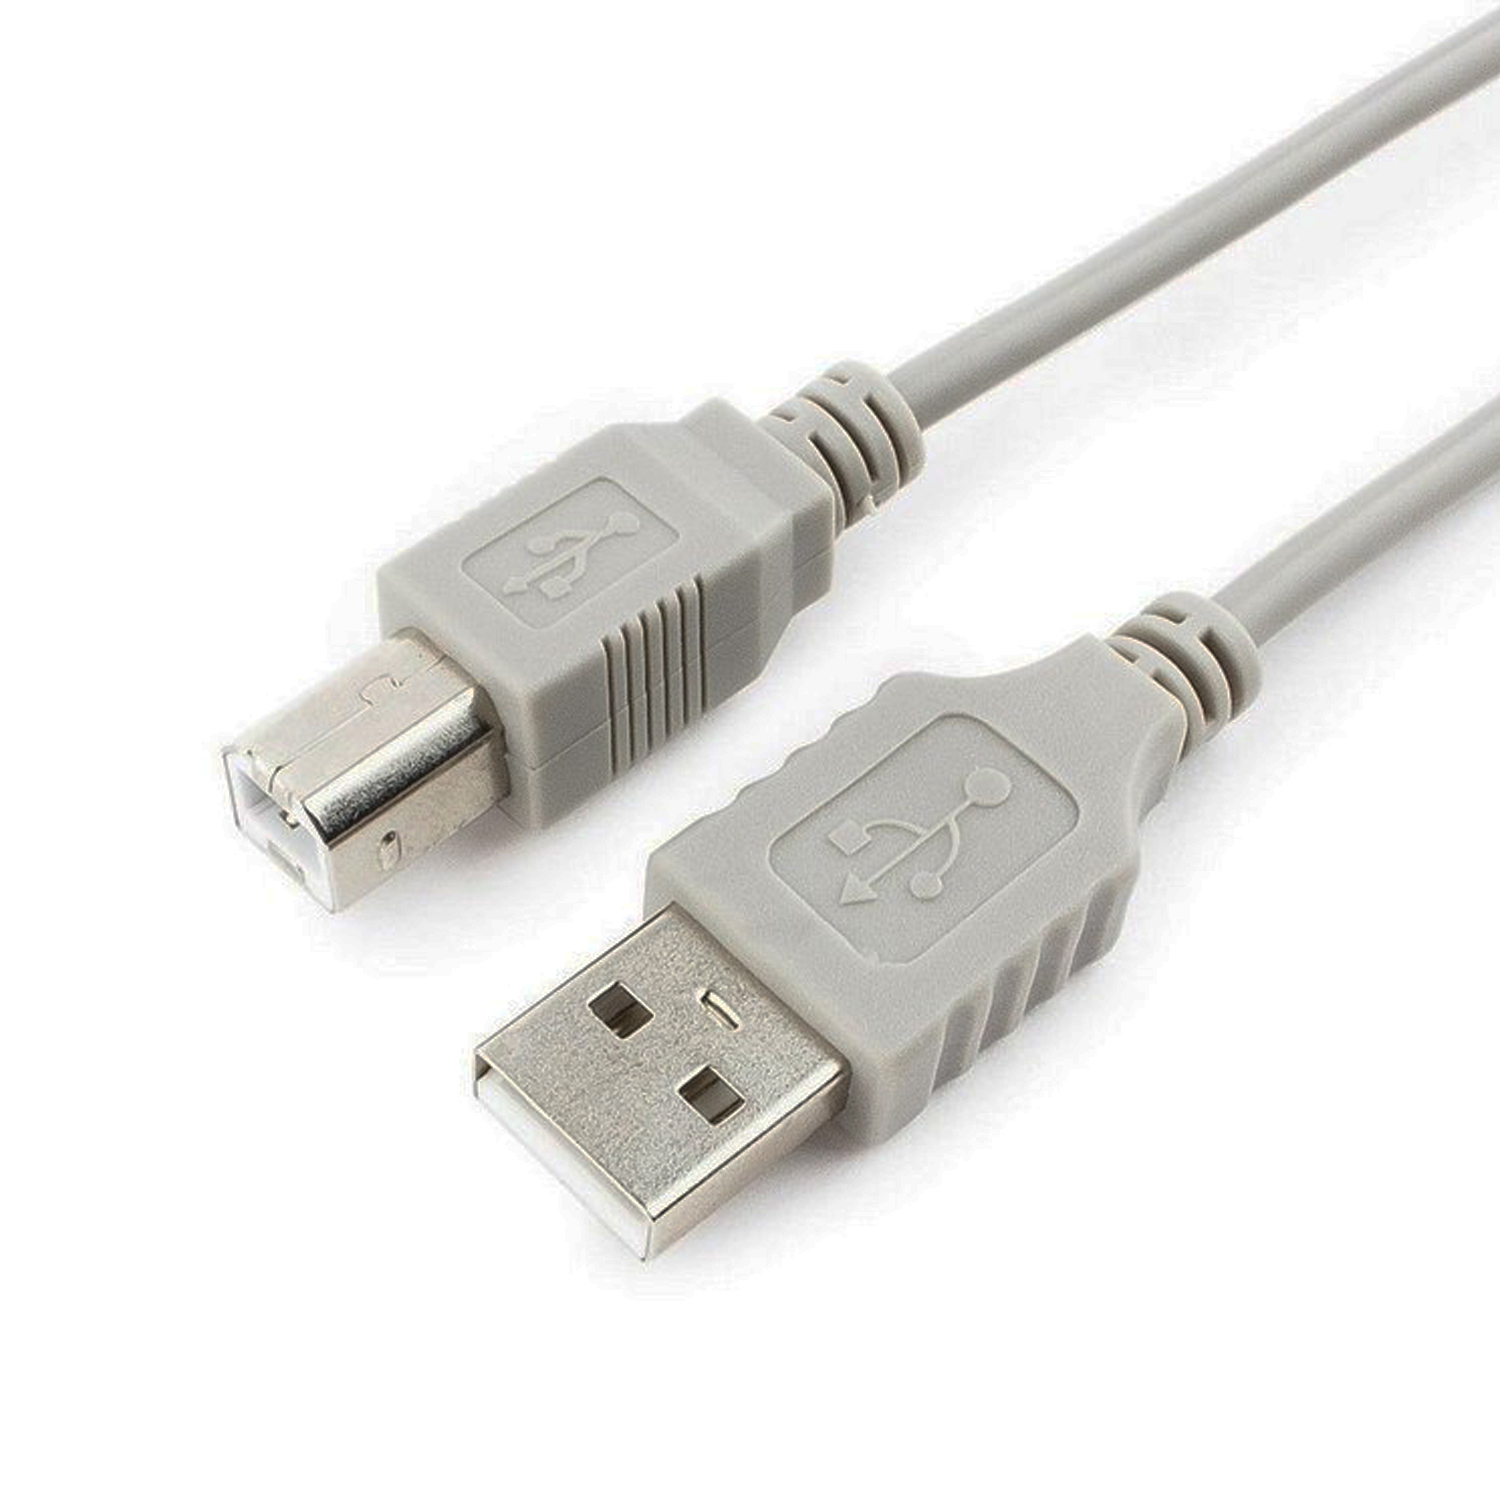 Шнур USB AM-BM 3 м. серый (для принтера, сканера), фото